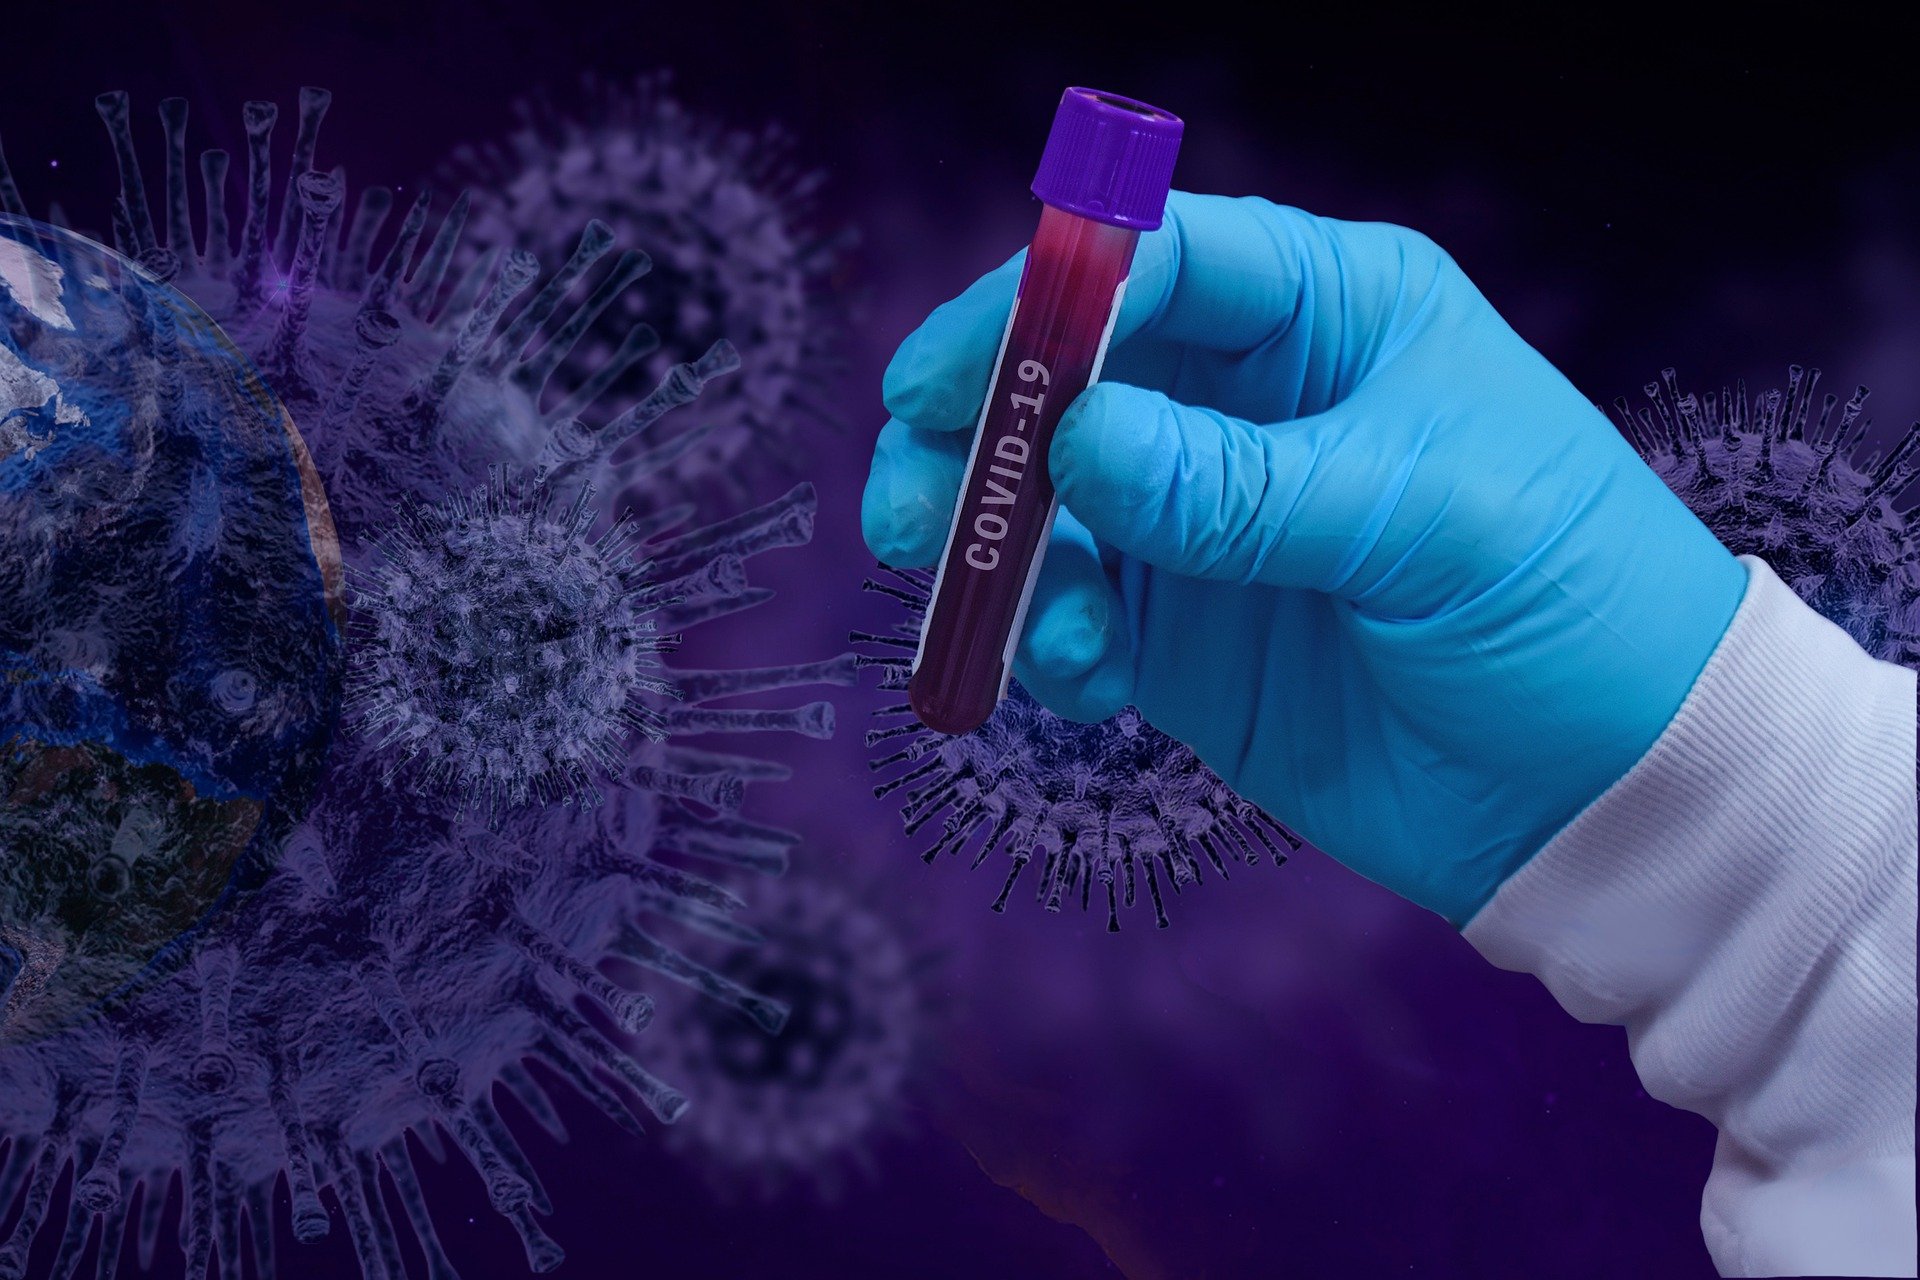 KORONA PRESJEK: Bez preminulih, još 60 novih slučajeva korona virusa